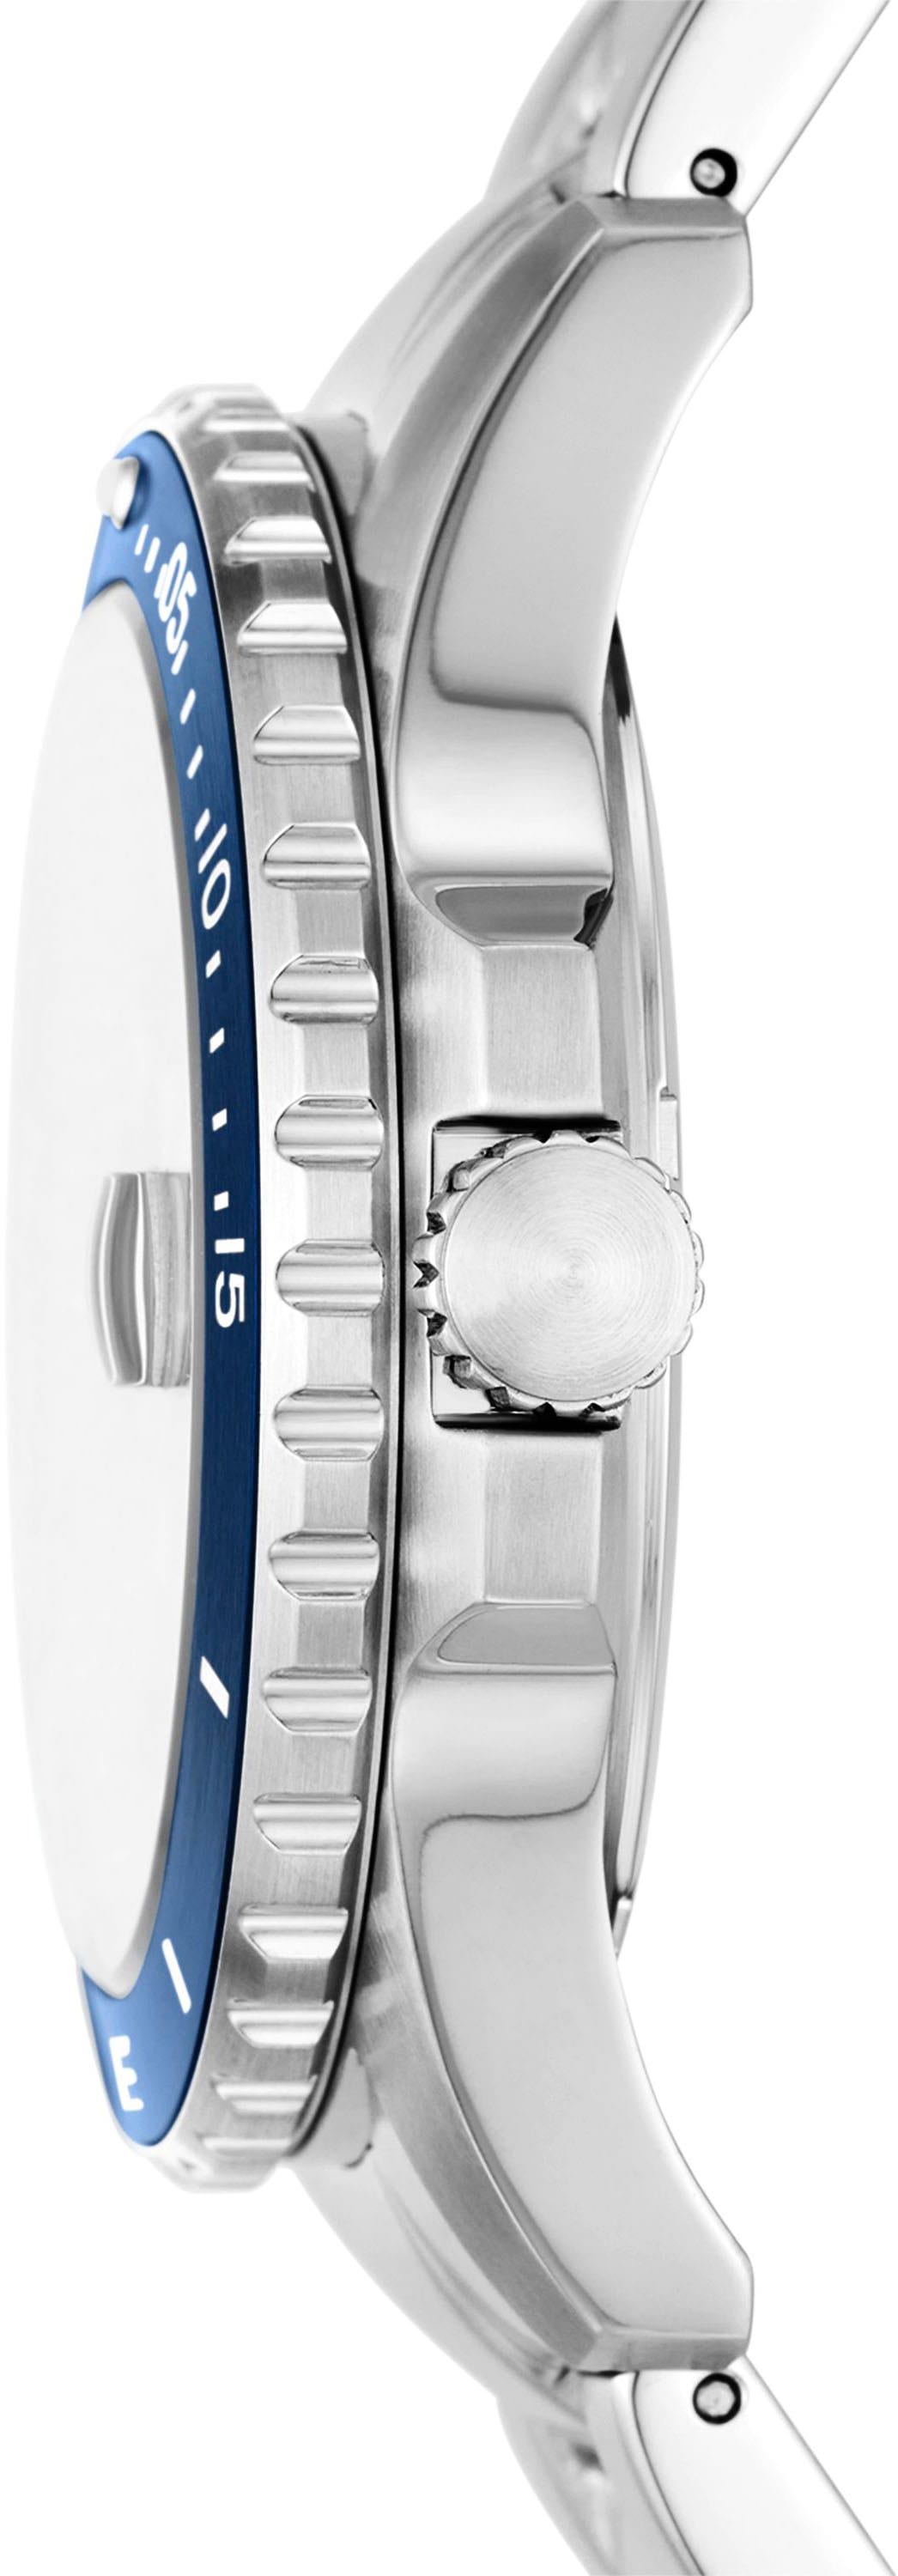 Fossil Quarzuhr »FOSSIL BLUE DIVE, FS6029«, Armbanduhr, Herrenuhr, Datum, analog